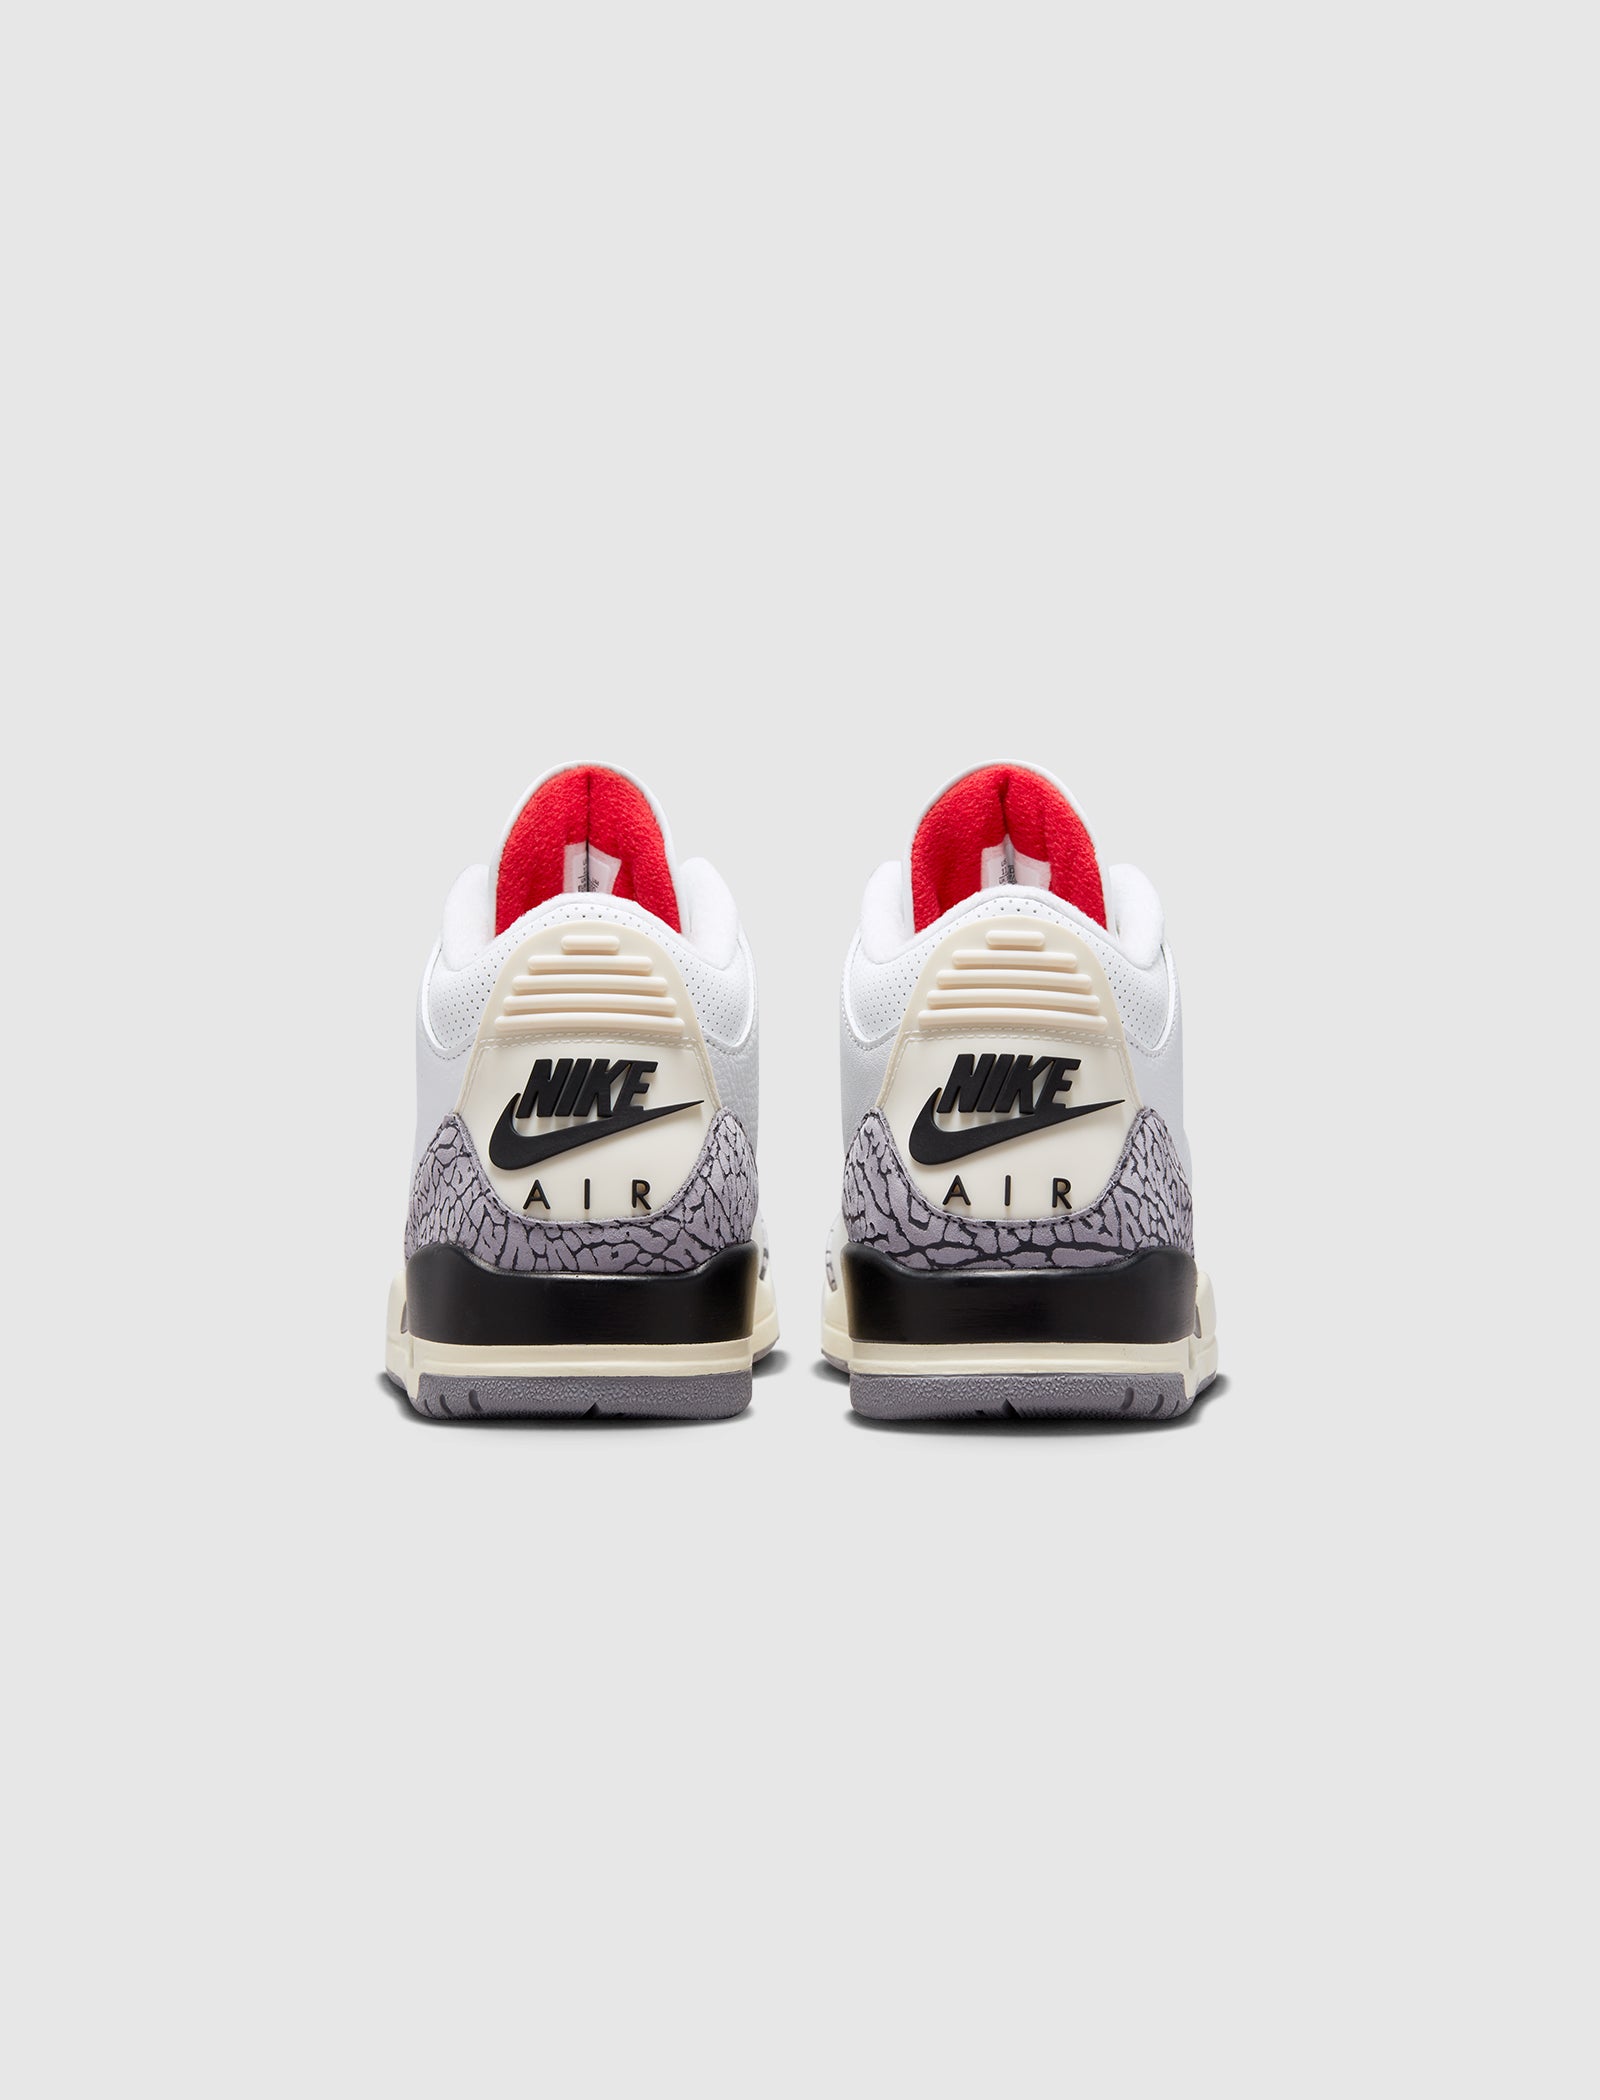 Jordan 3 Retro 'Palomino' Got 'em early… : r/Sneakers